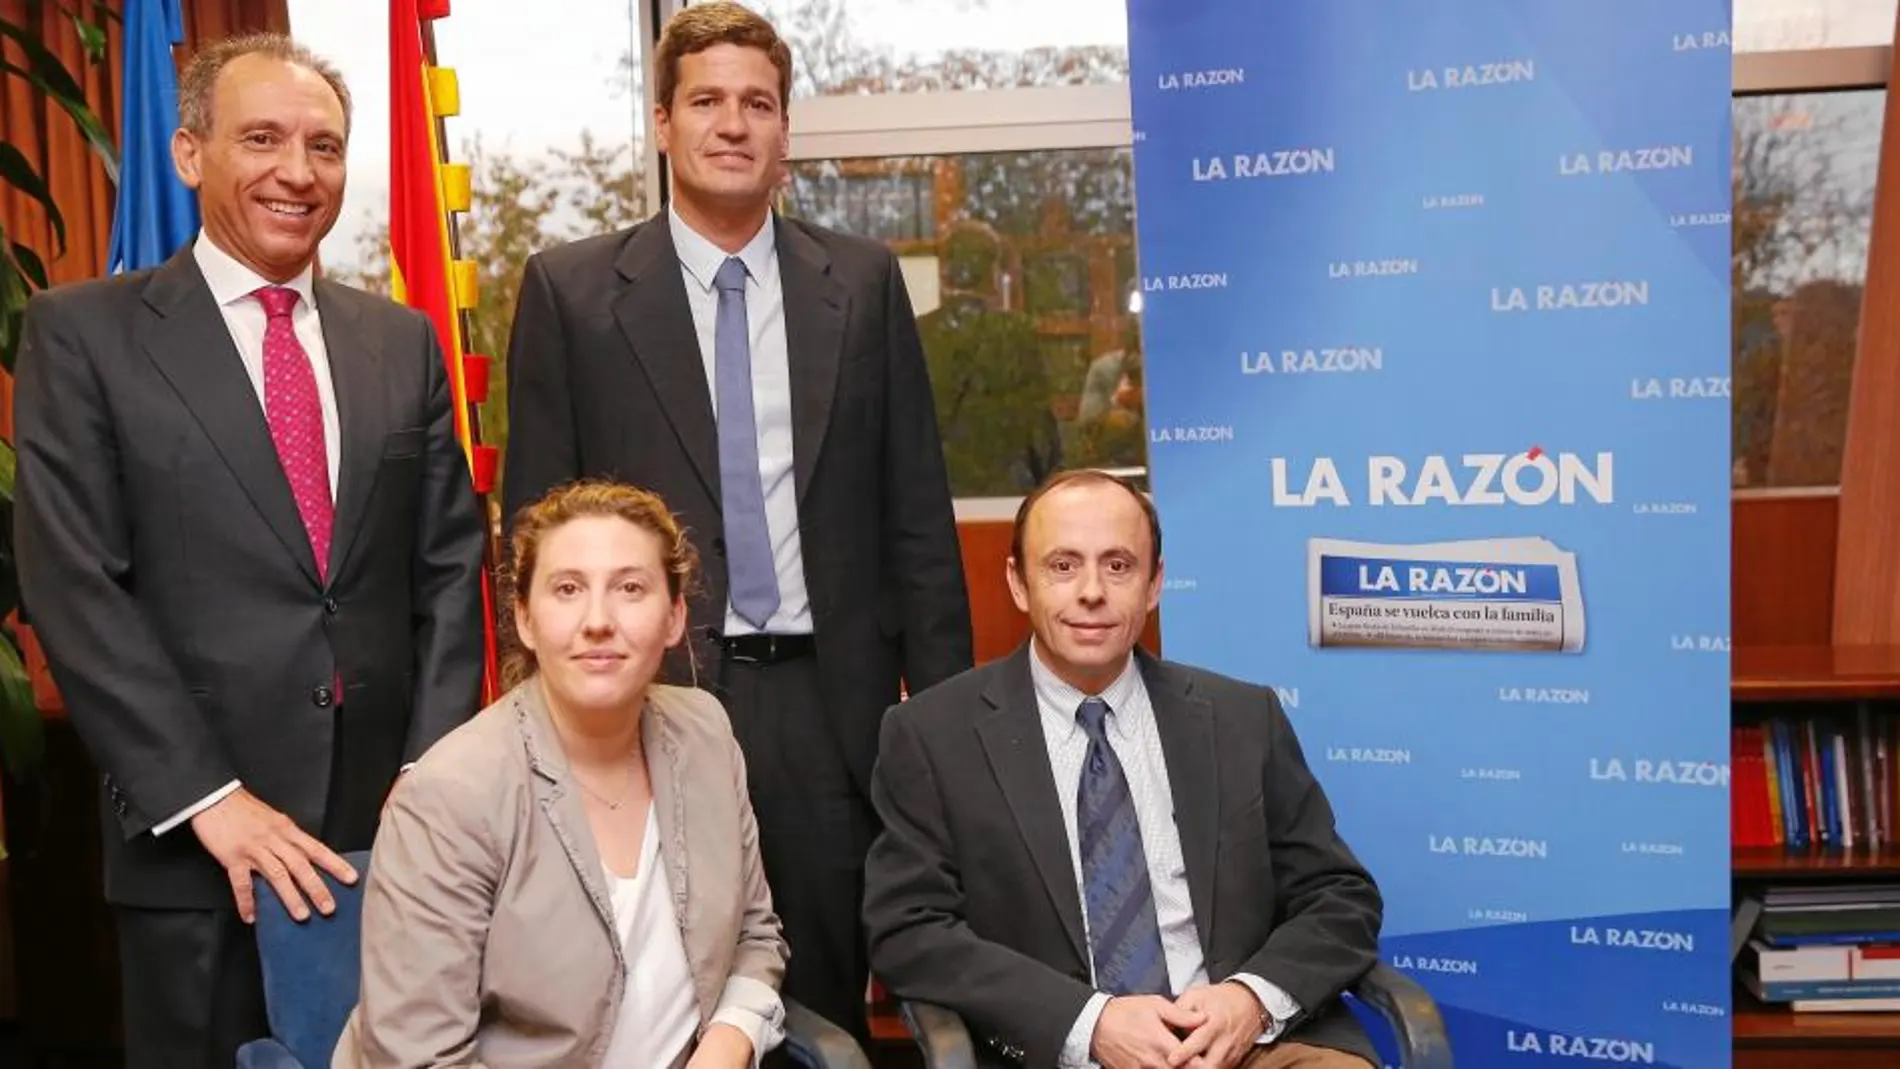 De izquierda a derecha, arriba: Carlos Vicente, Javier Borso. Abajo: Cristina Sánchez y Emilio Camacho